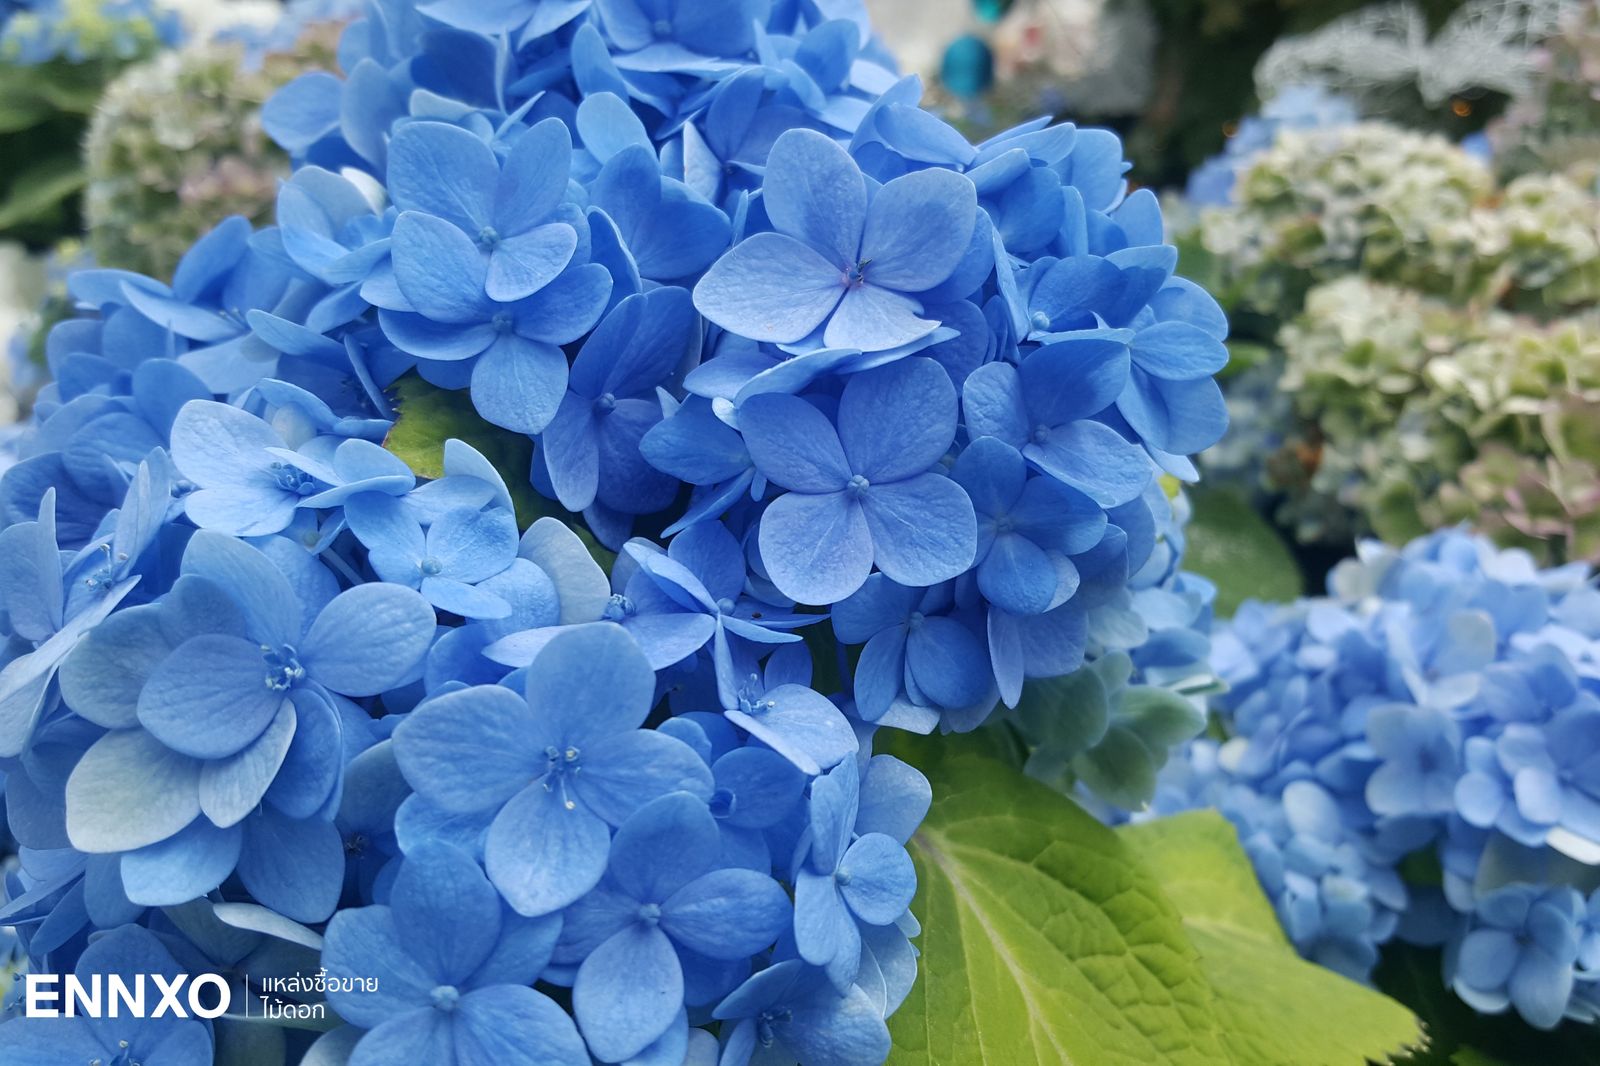 รวม 12 ดอกไม้สีฟ้าสวยๆ พร้อมชื่อมีอะไรบ้าง และความหมายของดอกไม้